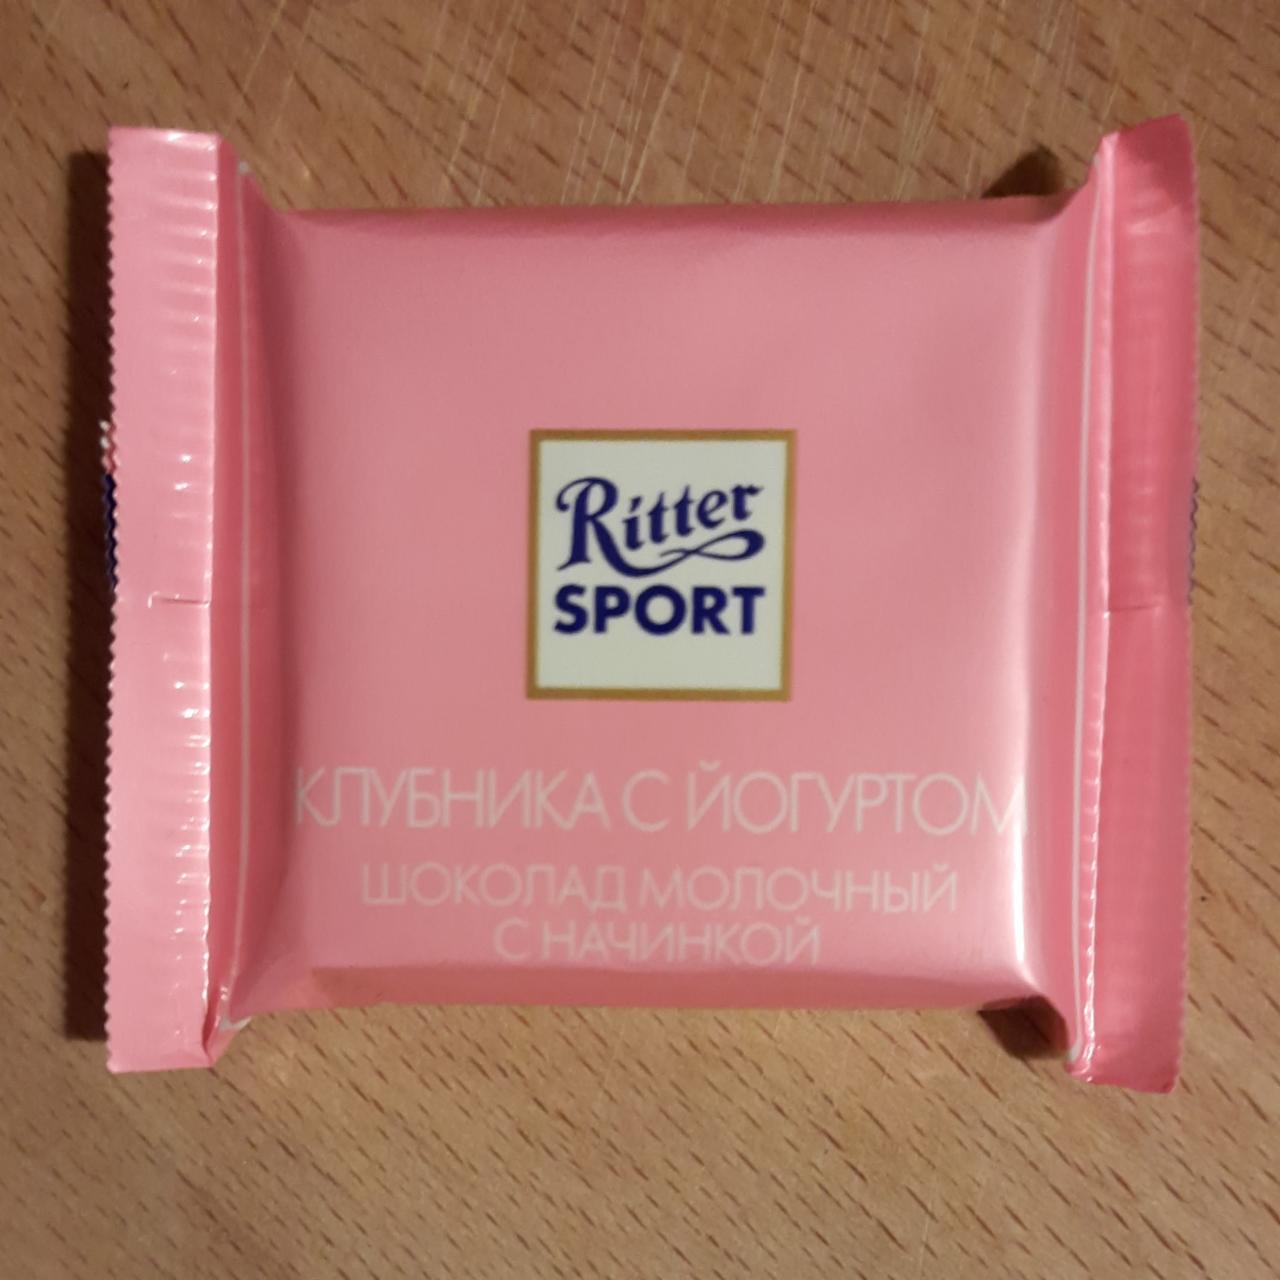 Фото - Шоколад молочный с начинкой клубника с йогуртом Ritter Sport